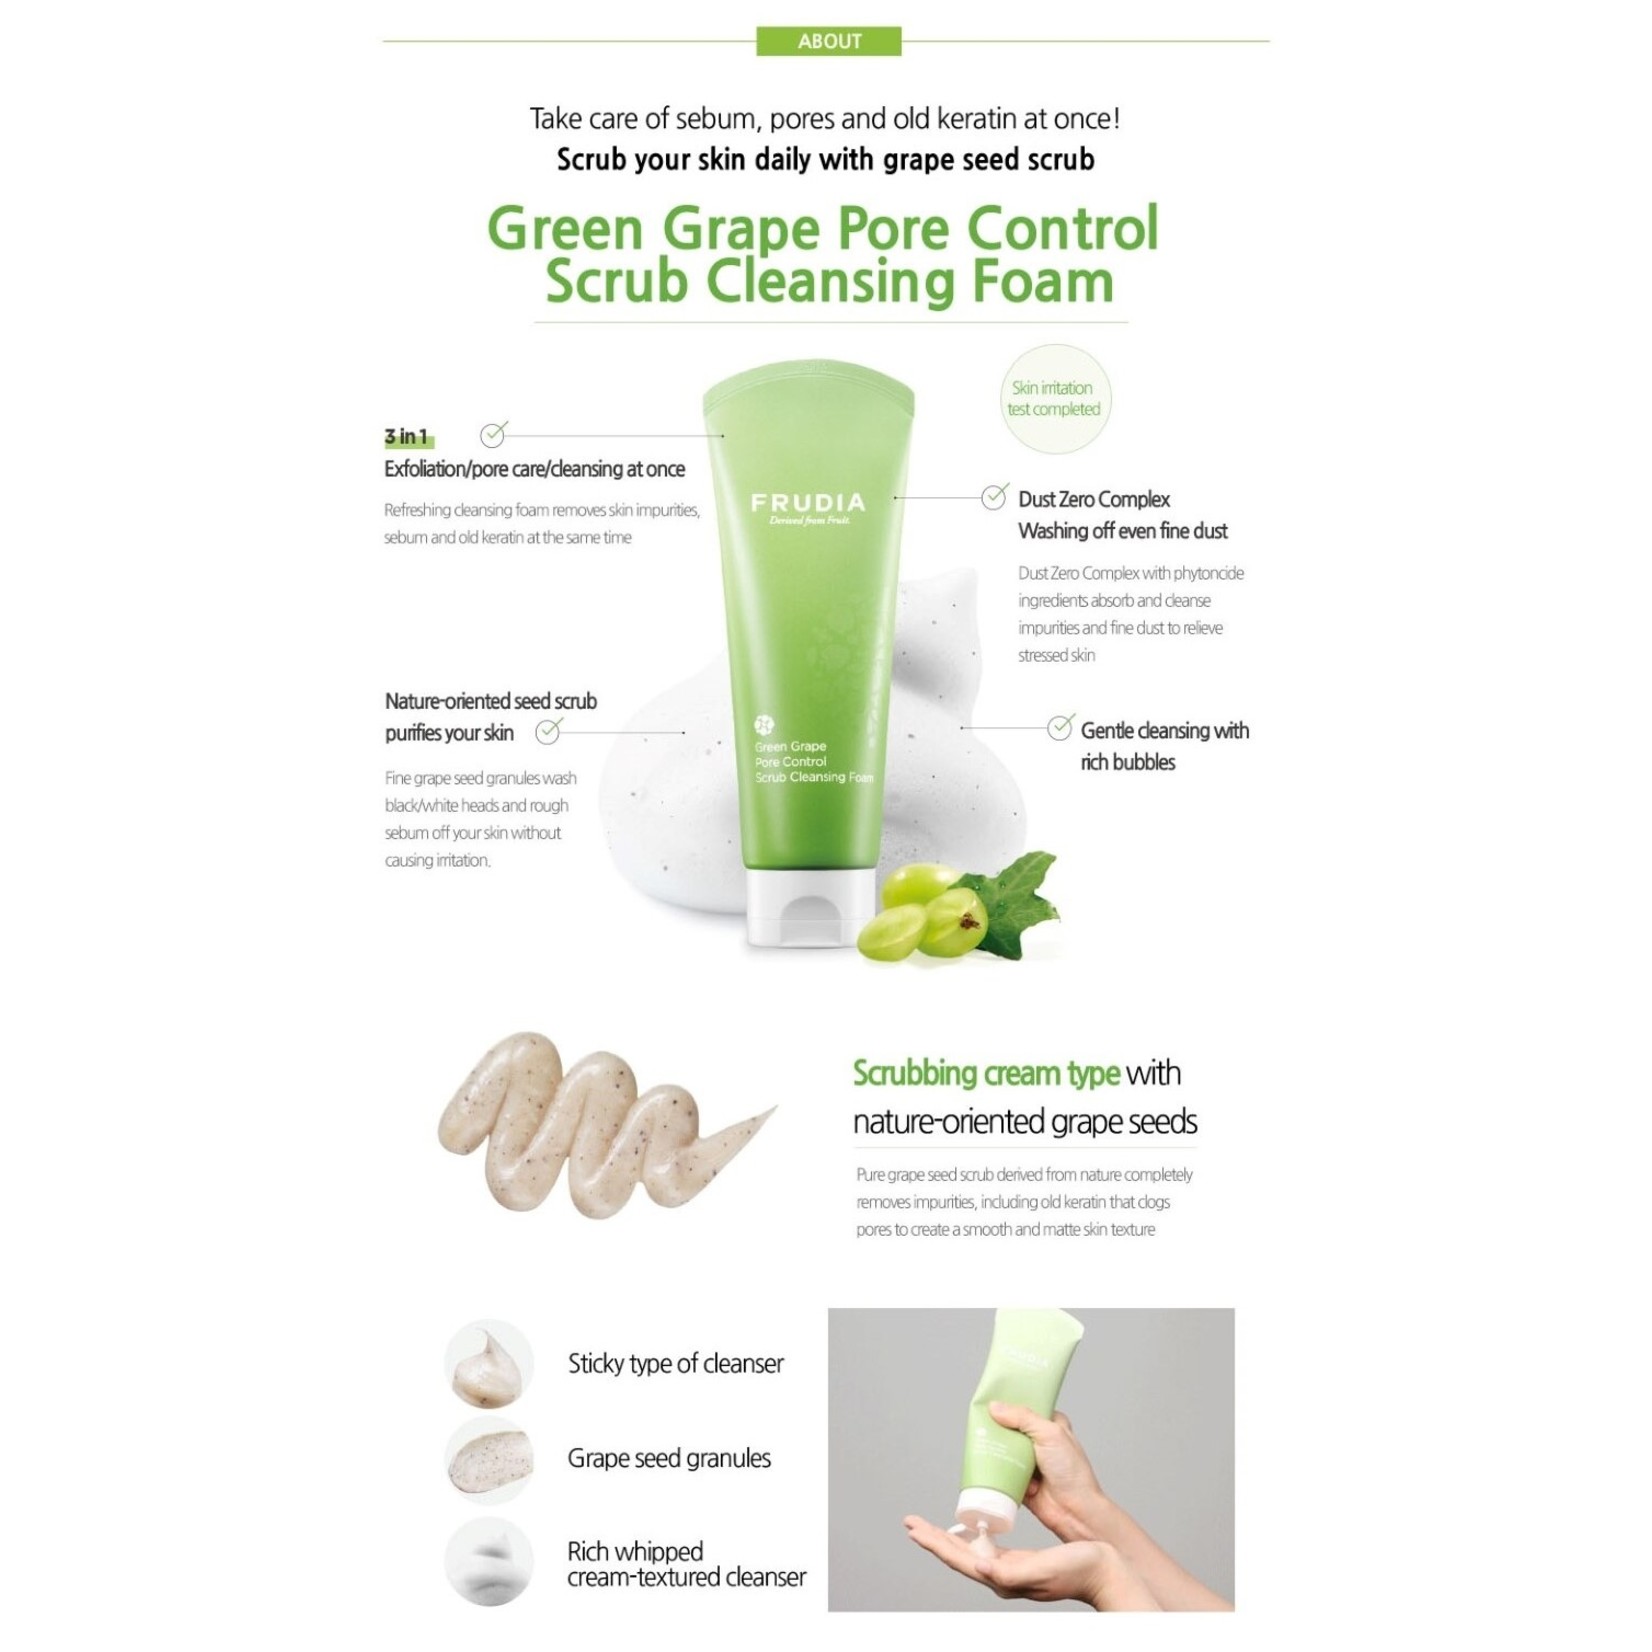 Green Grape Pore Control Scrub Cleansing Foam